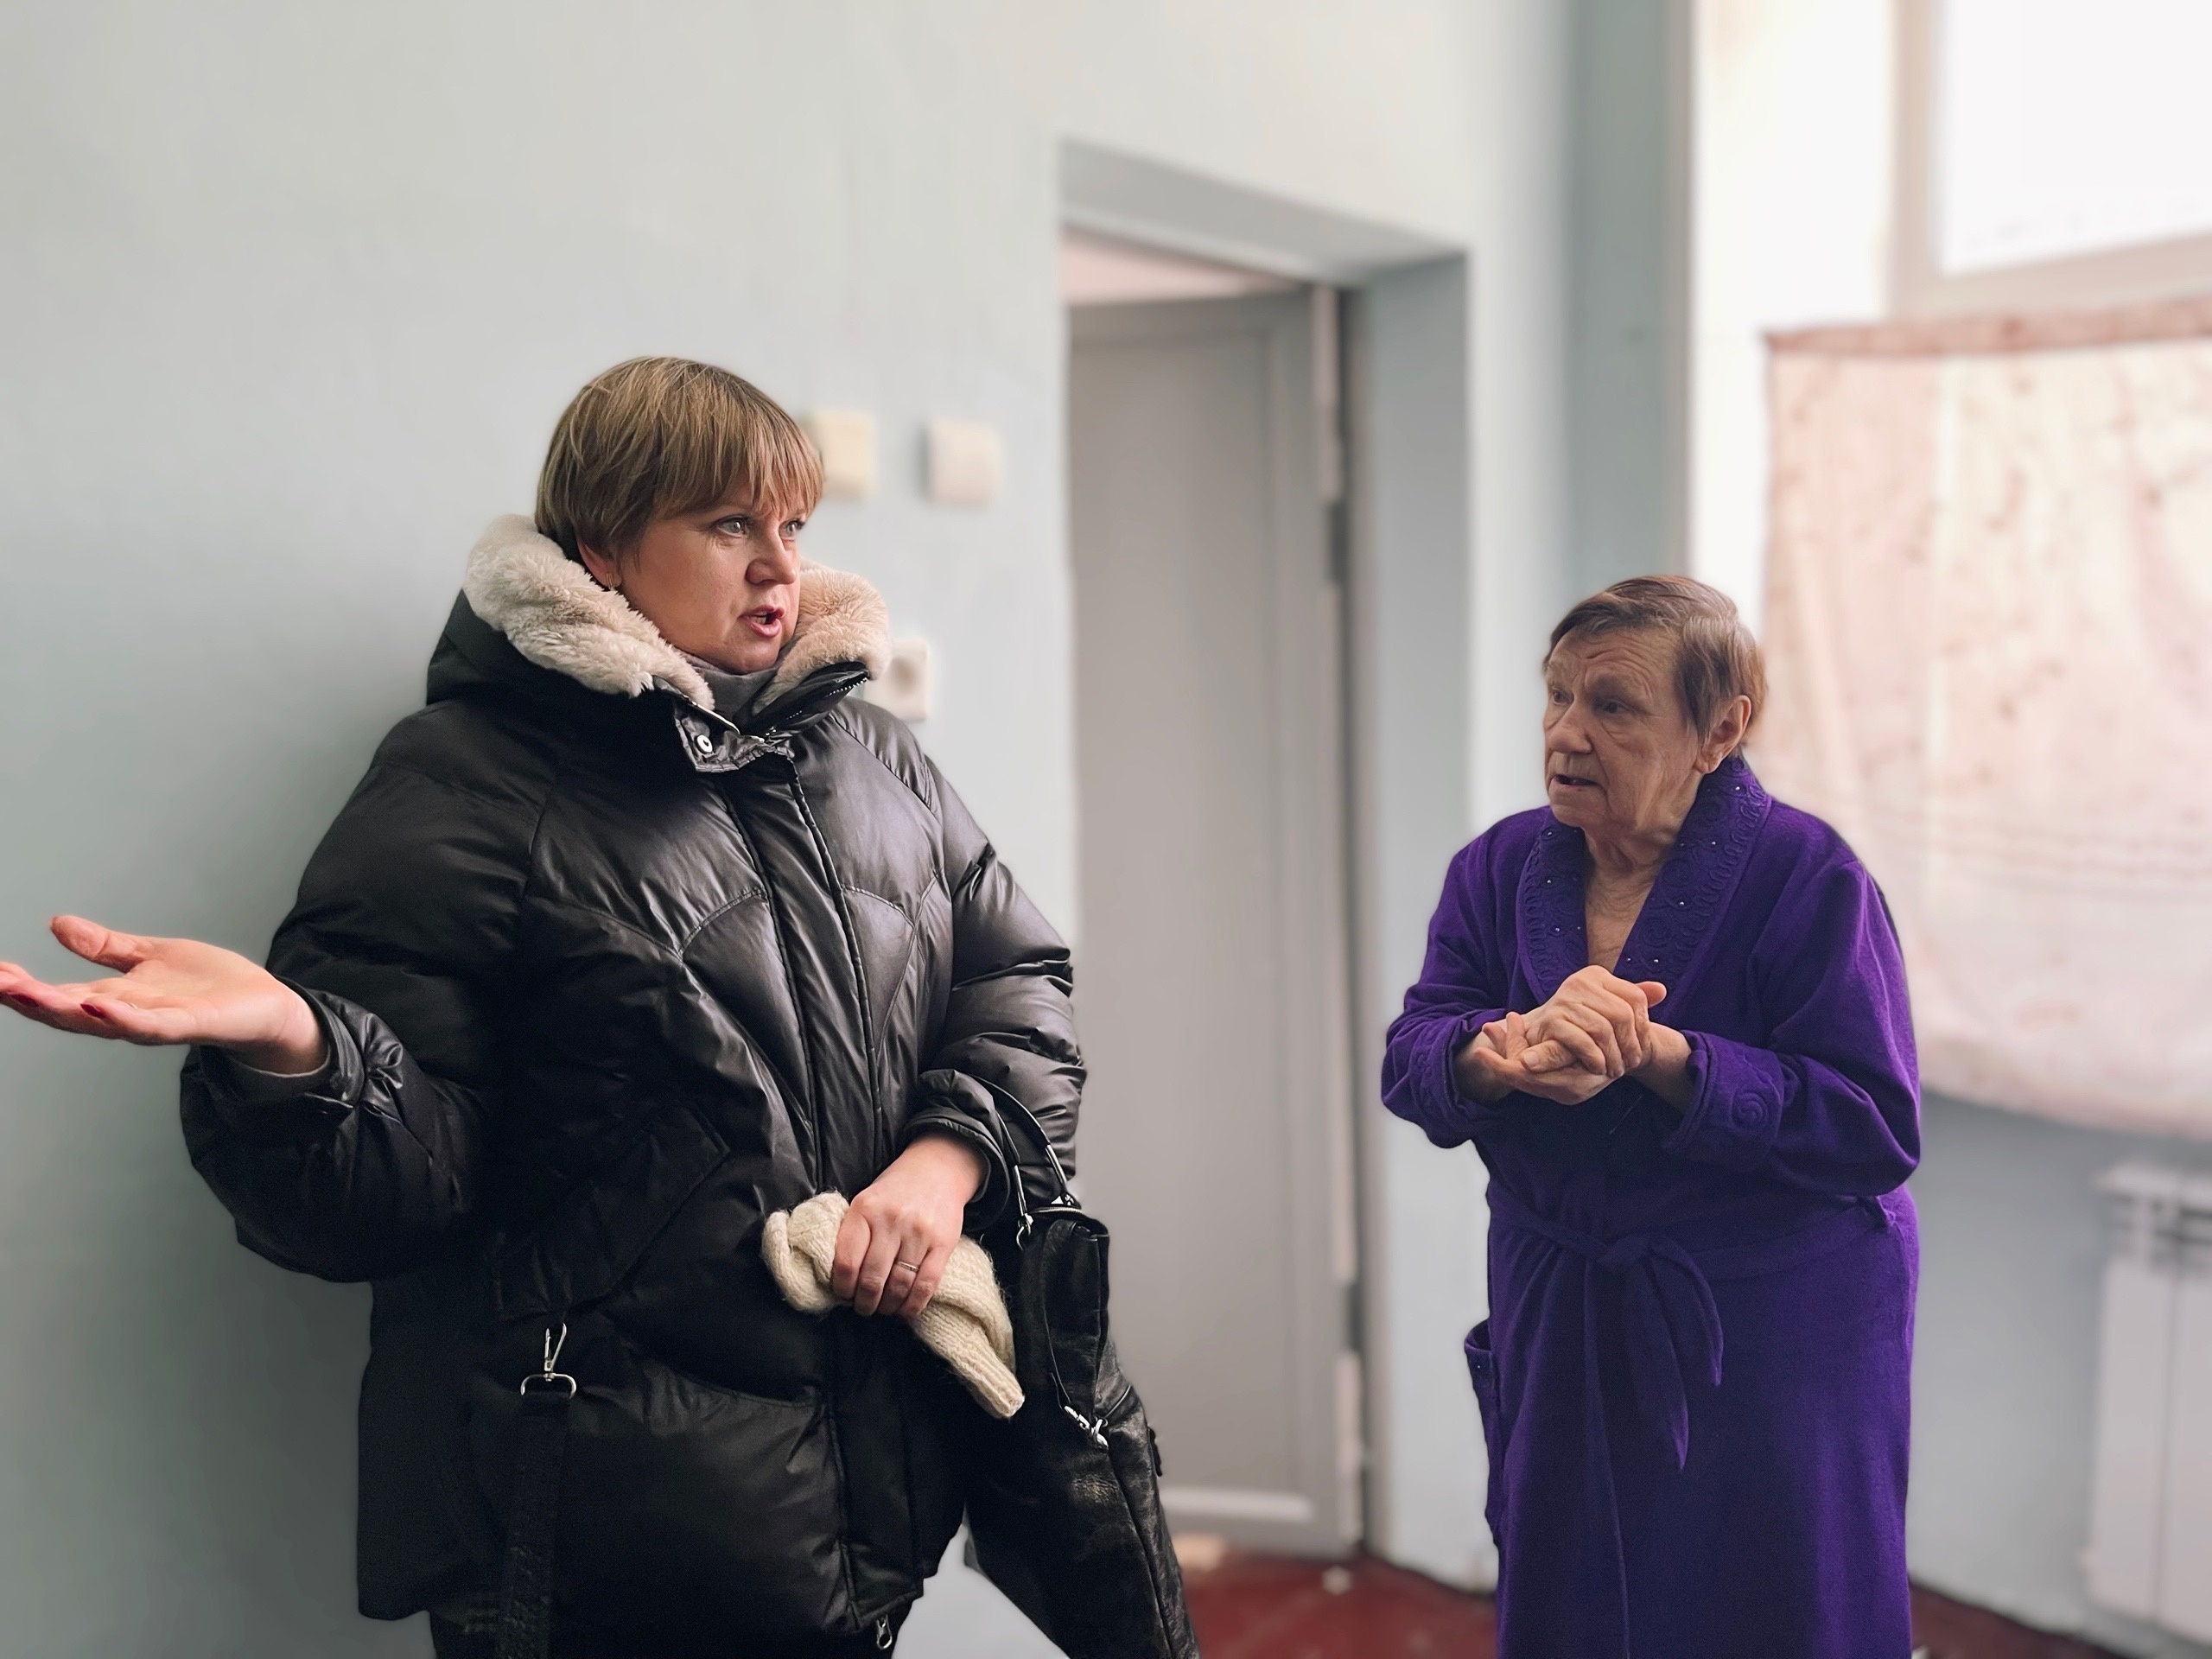 Жить нельзя переселить! 80-летняя пенсионерка вынуждена жить в непригодных условиях общежития РЖД